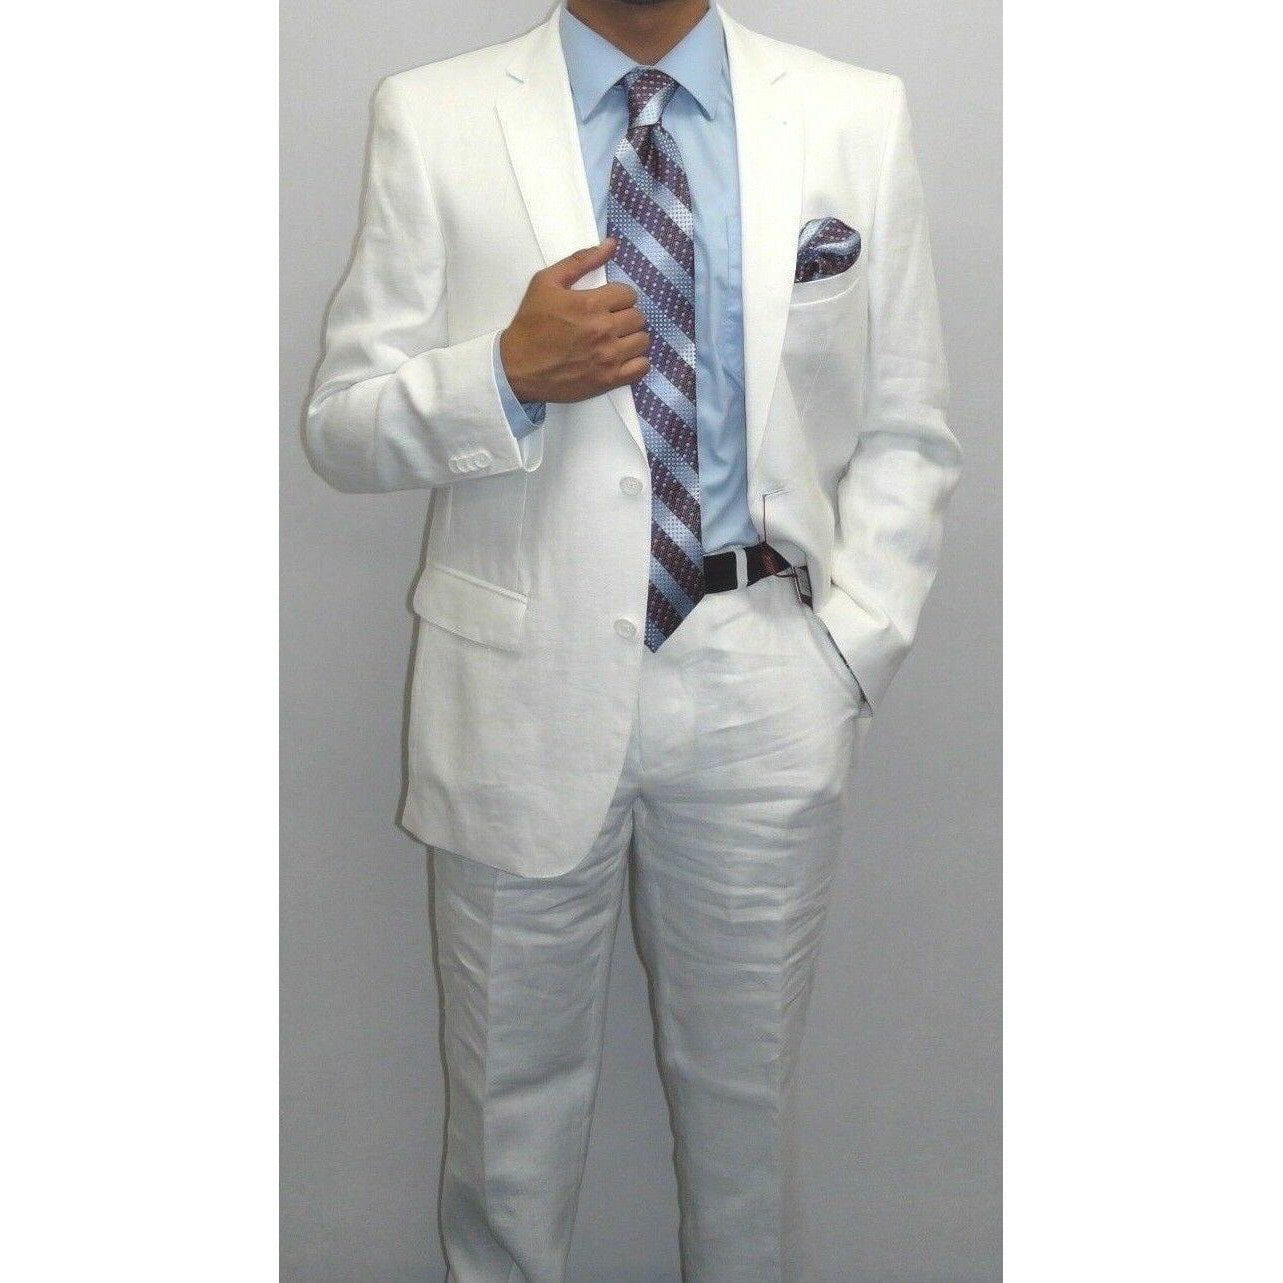 Men's Blue Linen suit By Renoir Soft Tropical Casual Dress Light Weight 601 Sale 